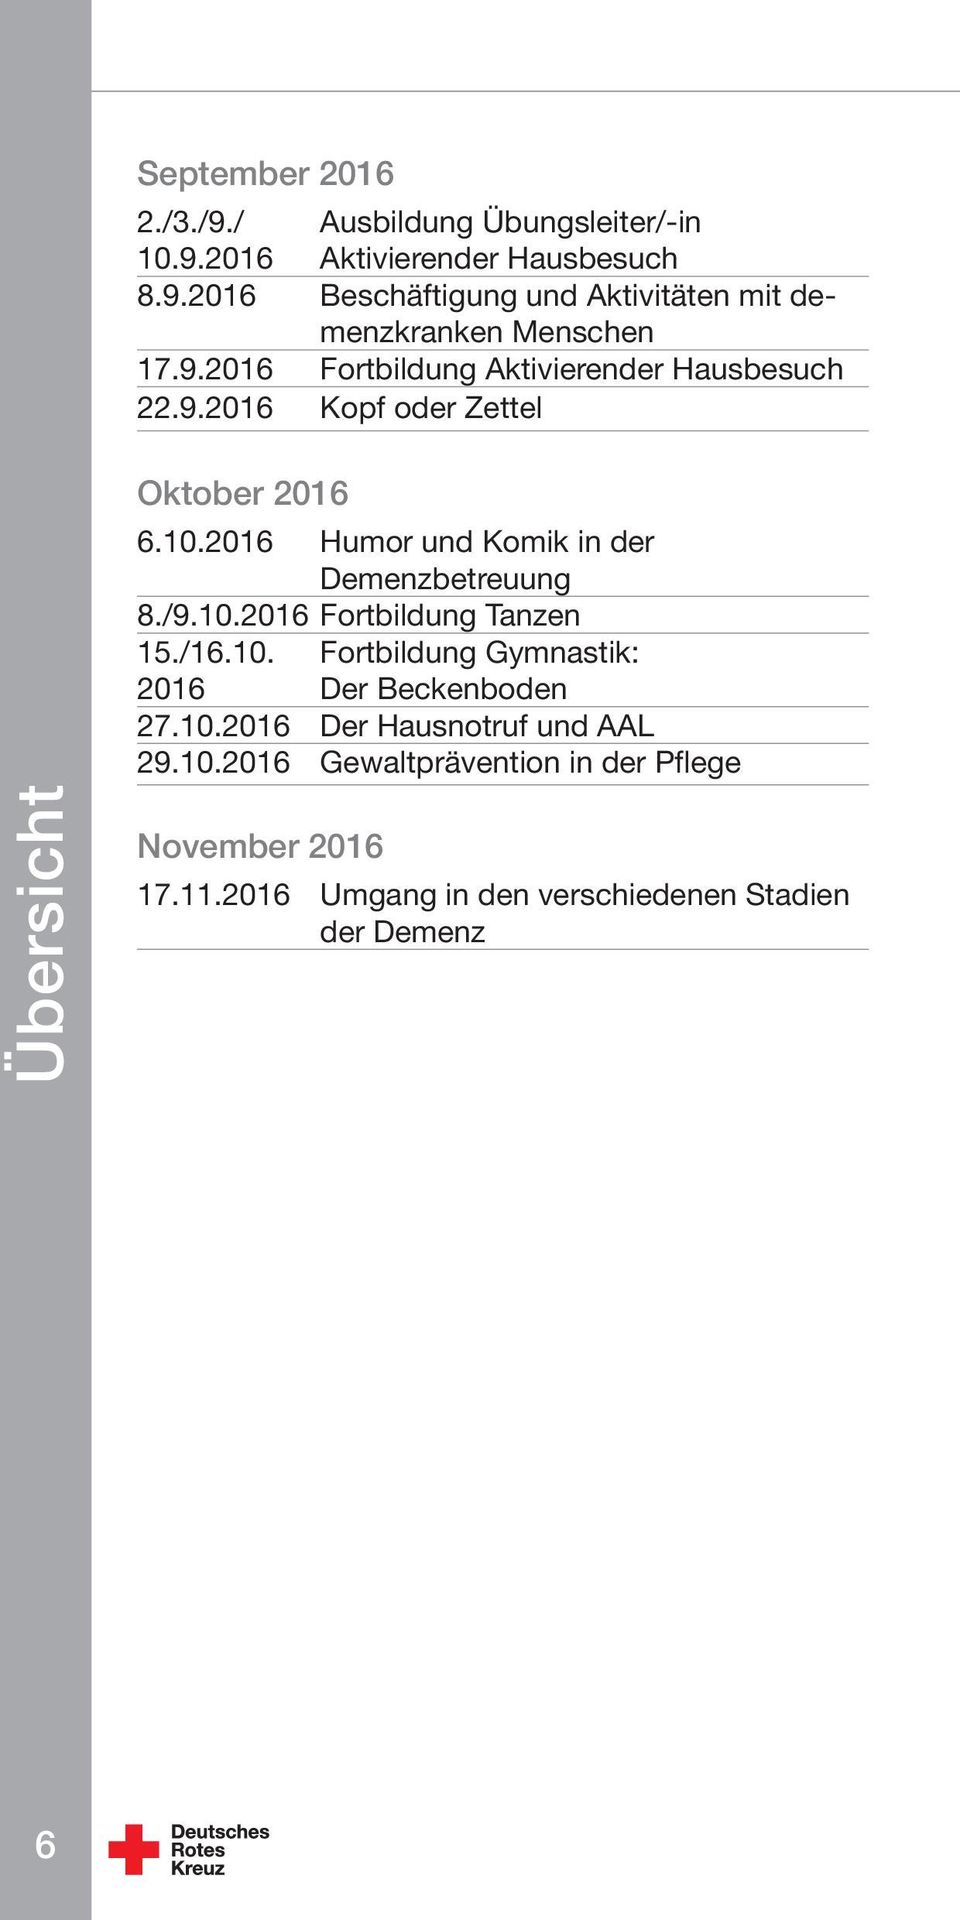 2016 Humor und Komik in der Demenzbetreuung 8./9.10.2016 Fortbildung Tanzen 15./16.10. Fortbildung Gymnastik: 2016 Der Beckenboden 27.